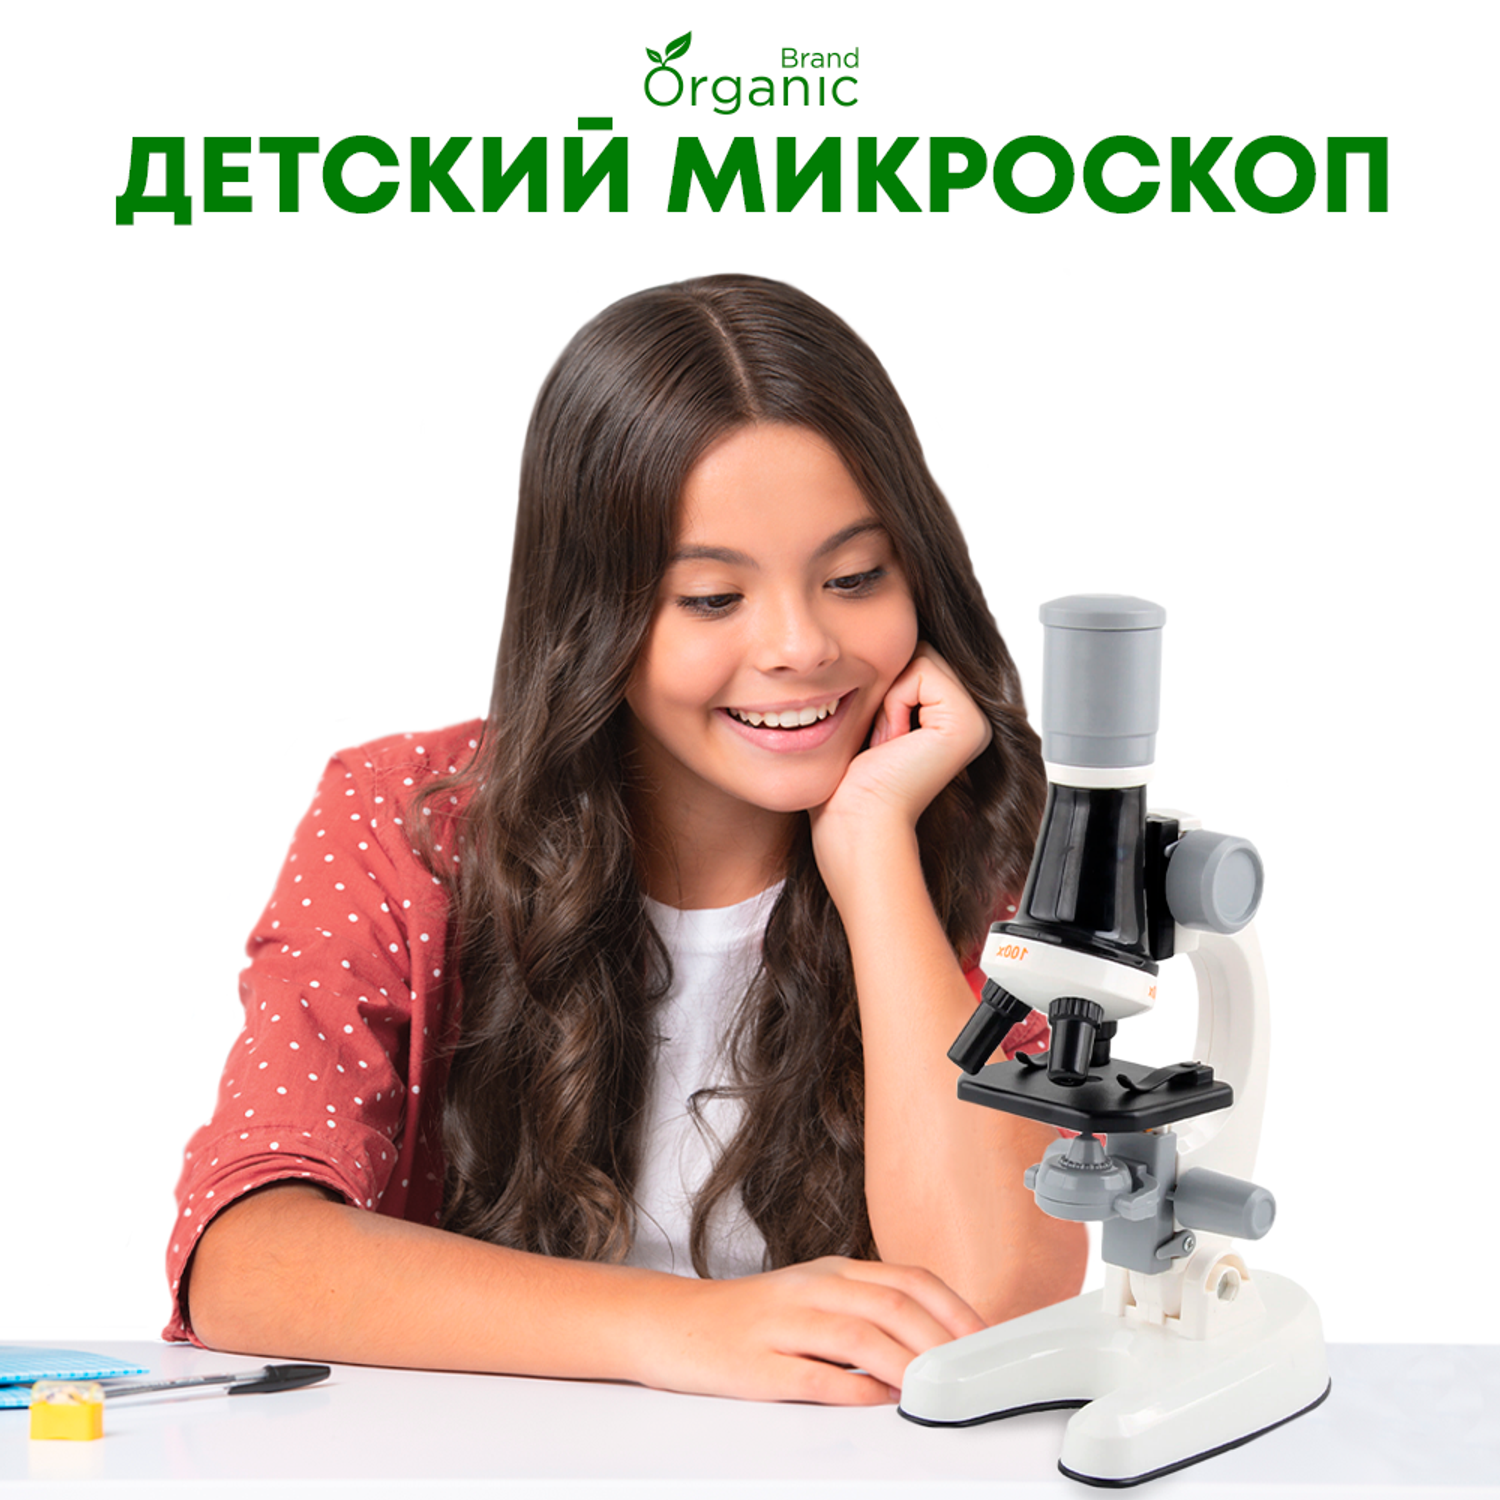 Детский микроскоп школьный ORGANIC BRAND 14 в 1 набор для опытов и исследований для юного ученого - фото 9